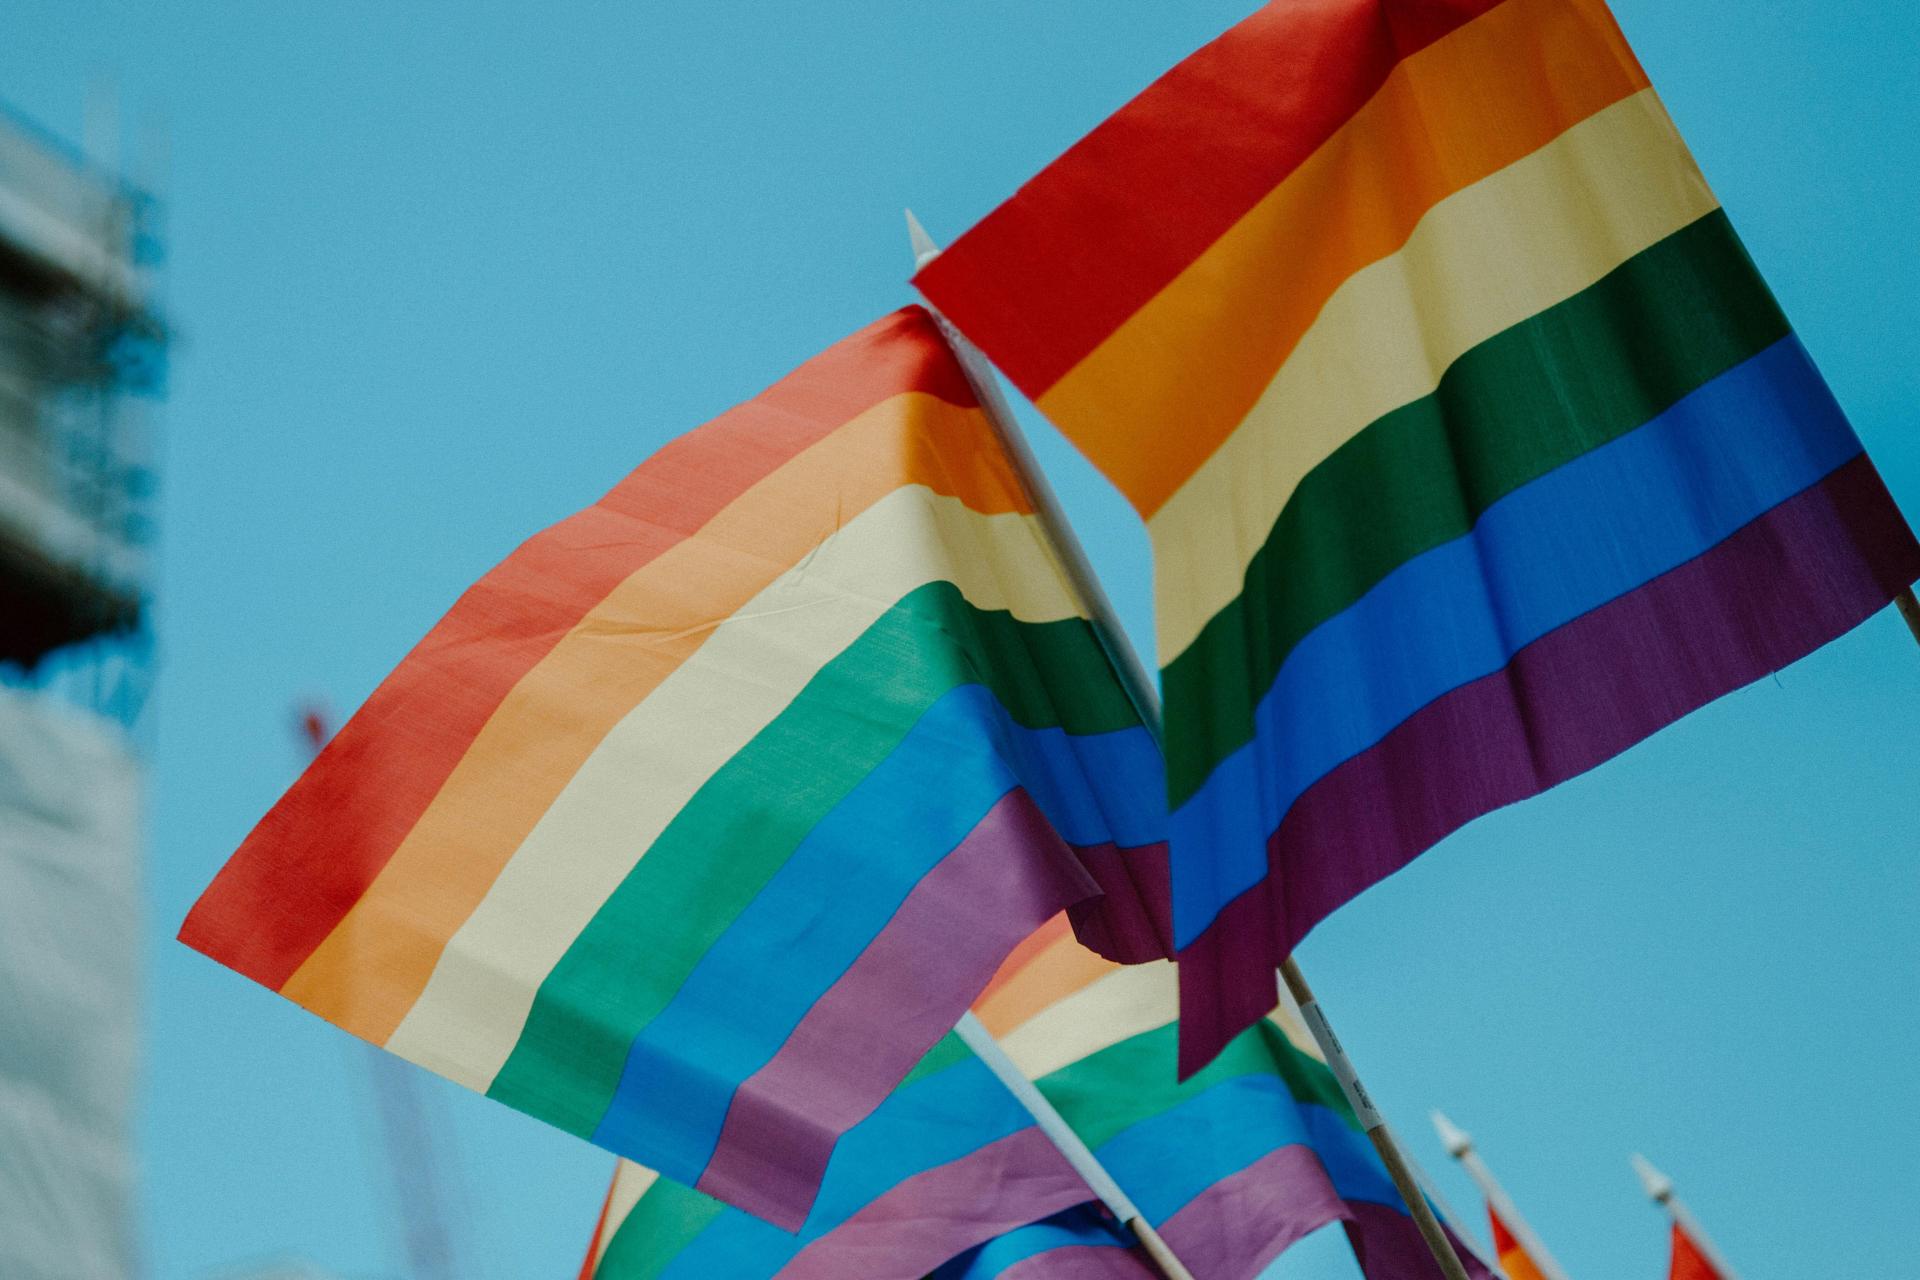 Uganda sprísňuje svoj konzervatívny postoj voči LGBTQ+ komunite